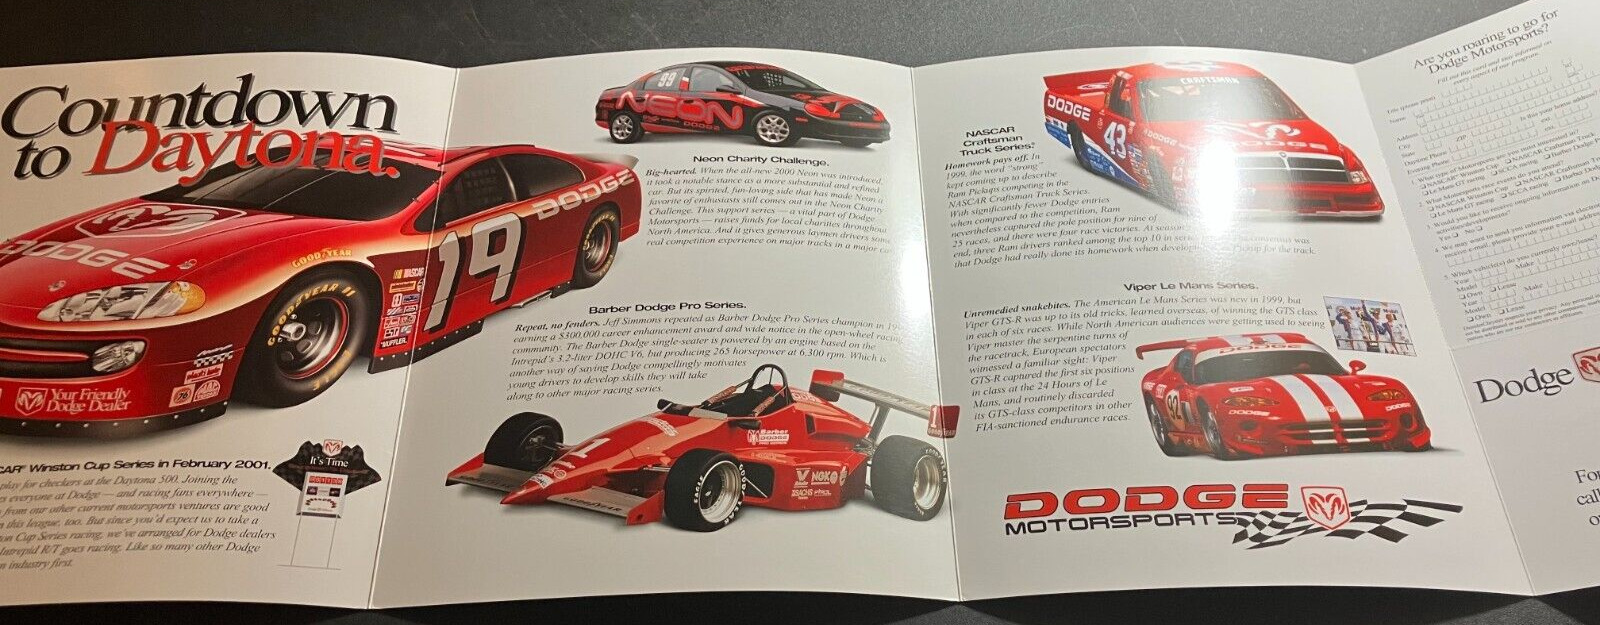 2000 Dodge Motorsports Vintage Brochure - NASCAR / Barber / Le Mans Viper - MINT